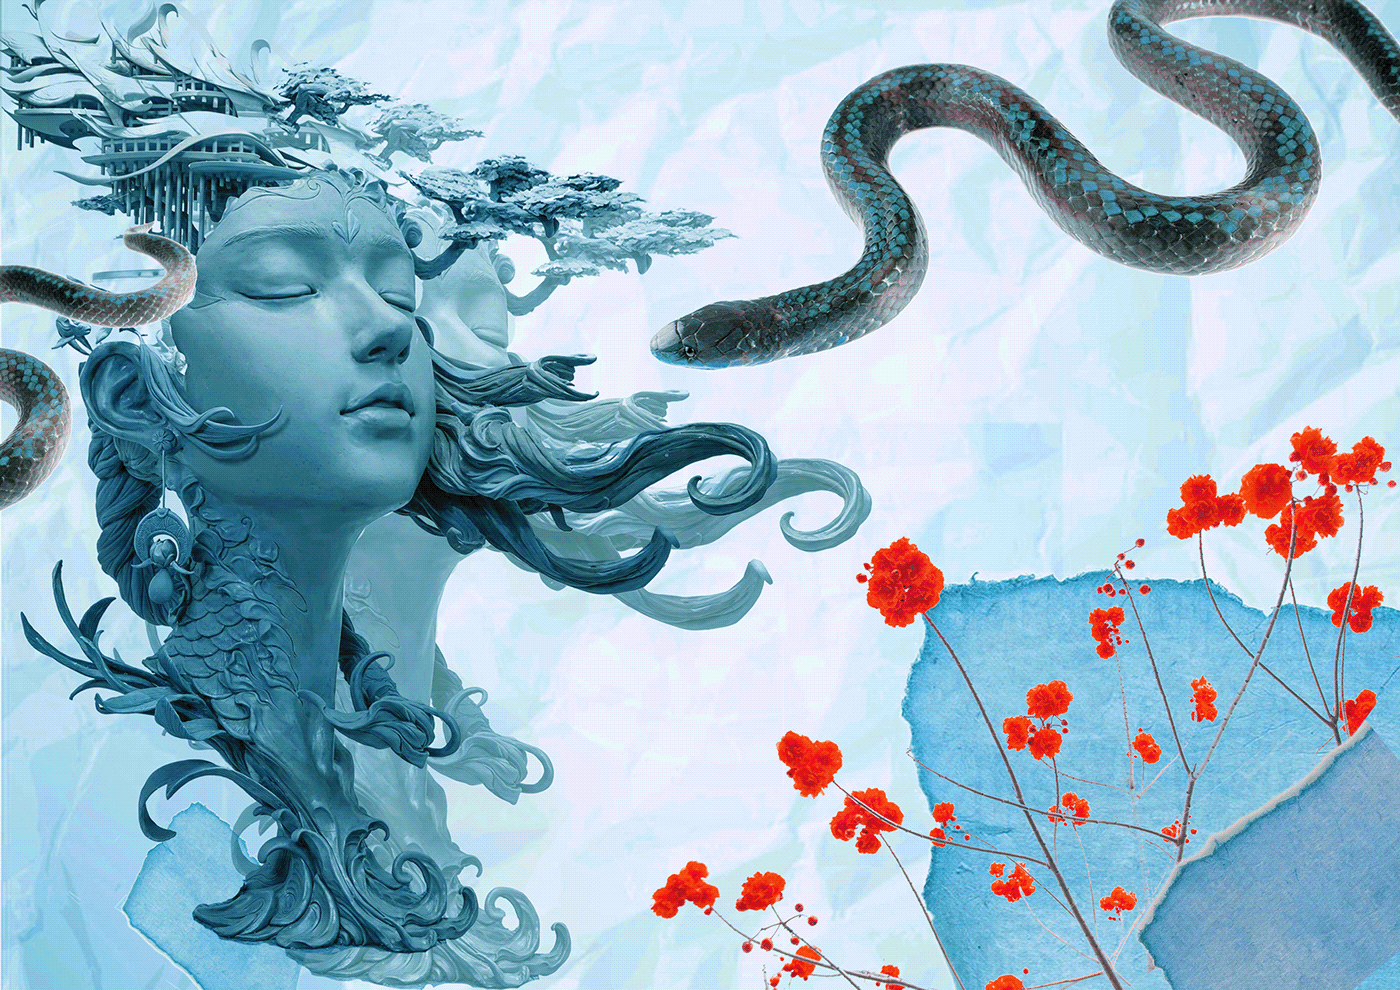 blue sculpture snake flower oldpaper girl mind think